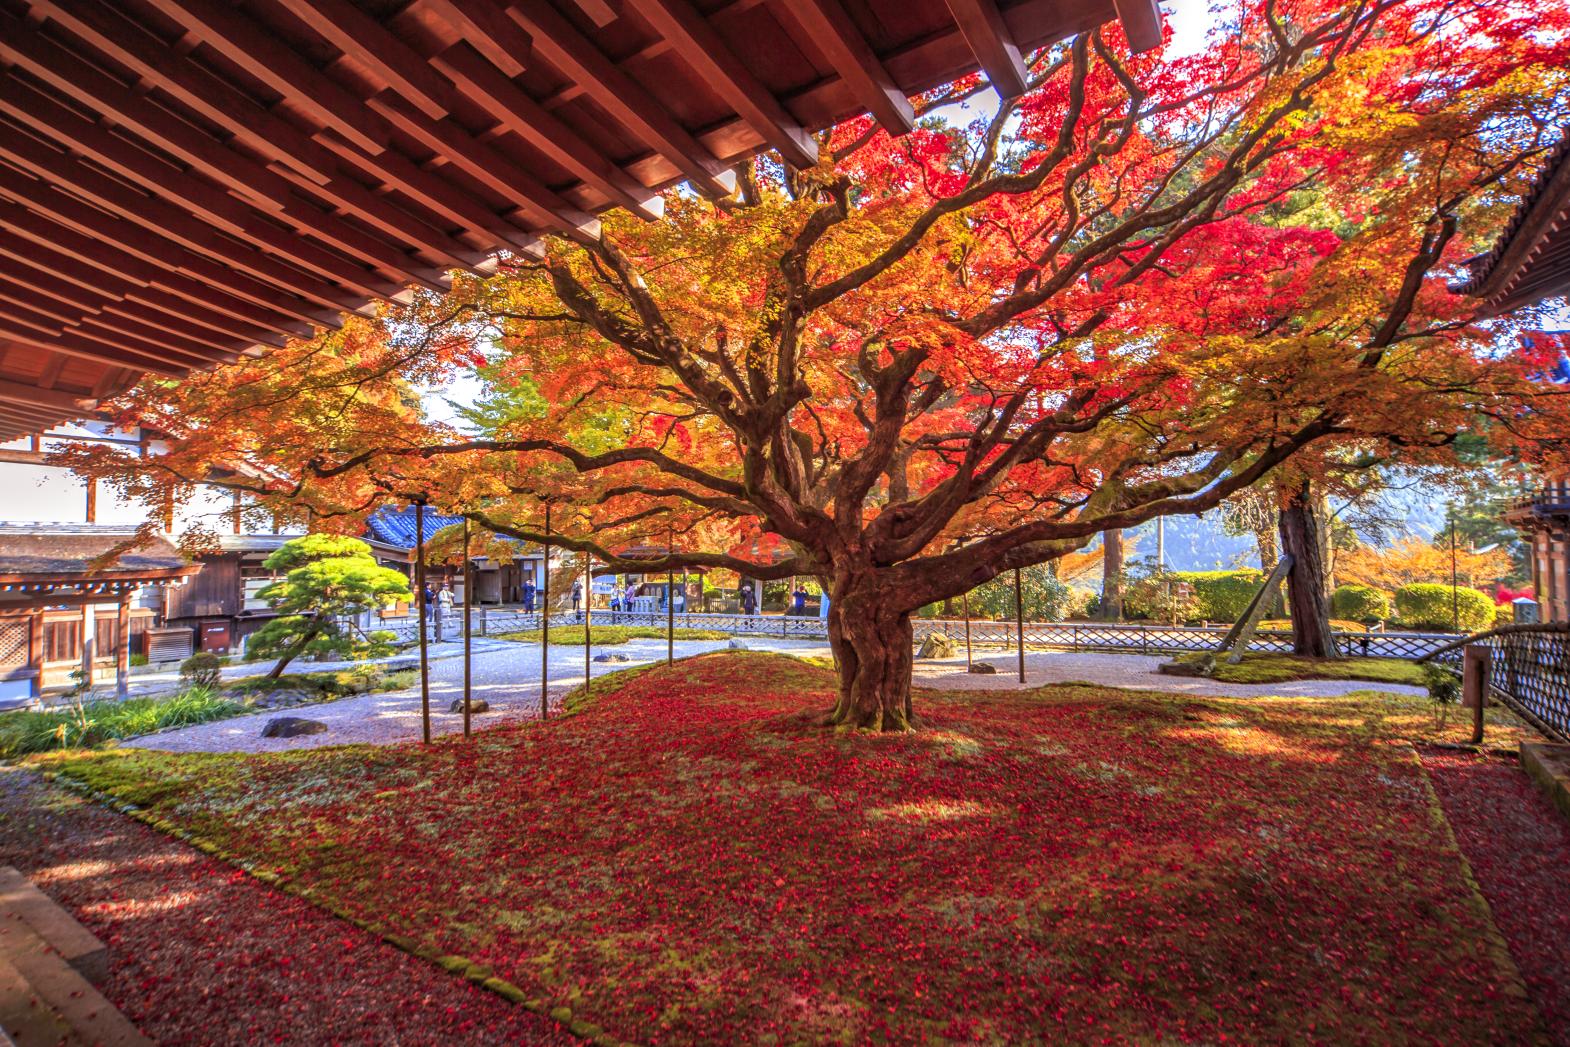 The 400-Year-Old Maple Tree, Autumn Leaves, and Garden of Raizan Sennyoji Daihioin Temple-1